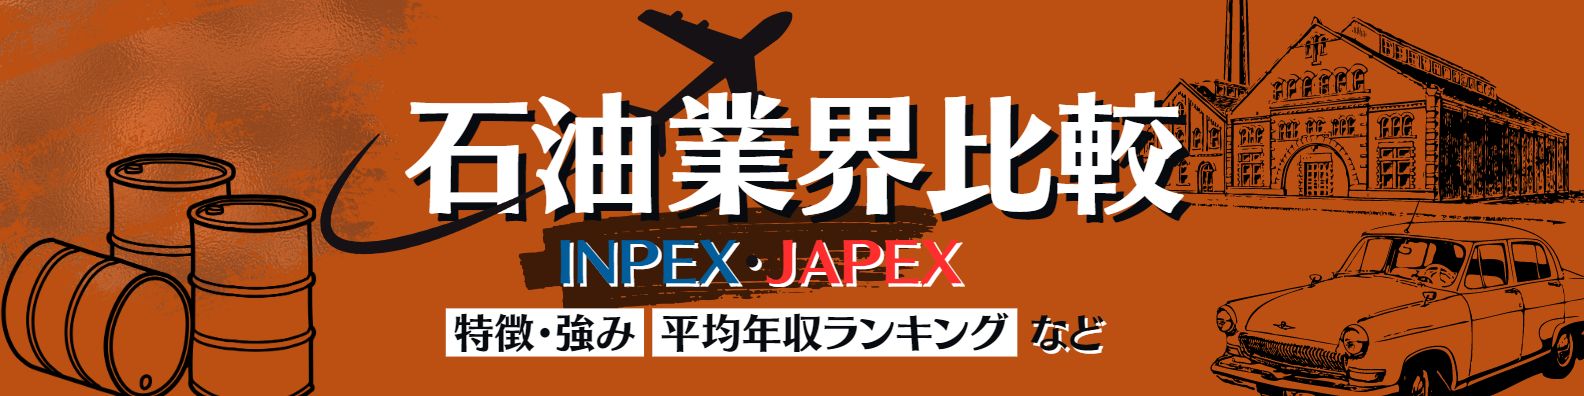 【石油業界研究】石油開発大手「INPEX・JAPEX(石油資源開発)」を比較-特徴・強み・ランキングなど-